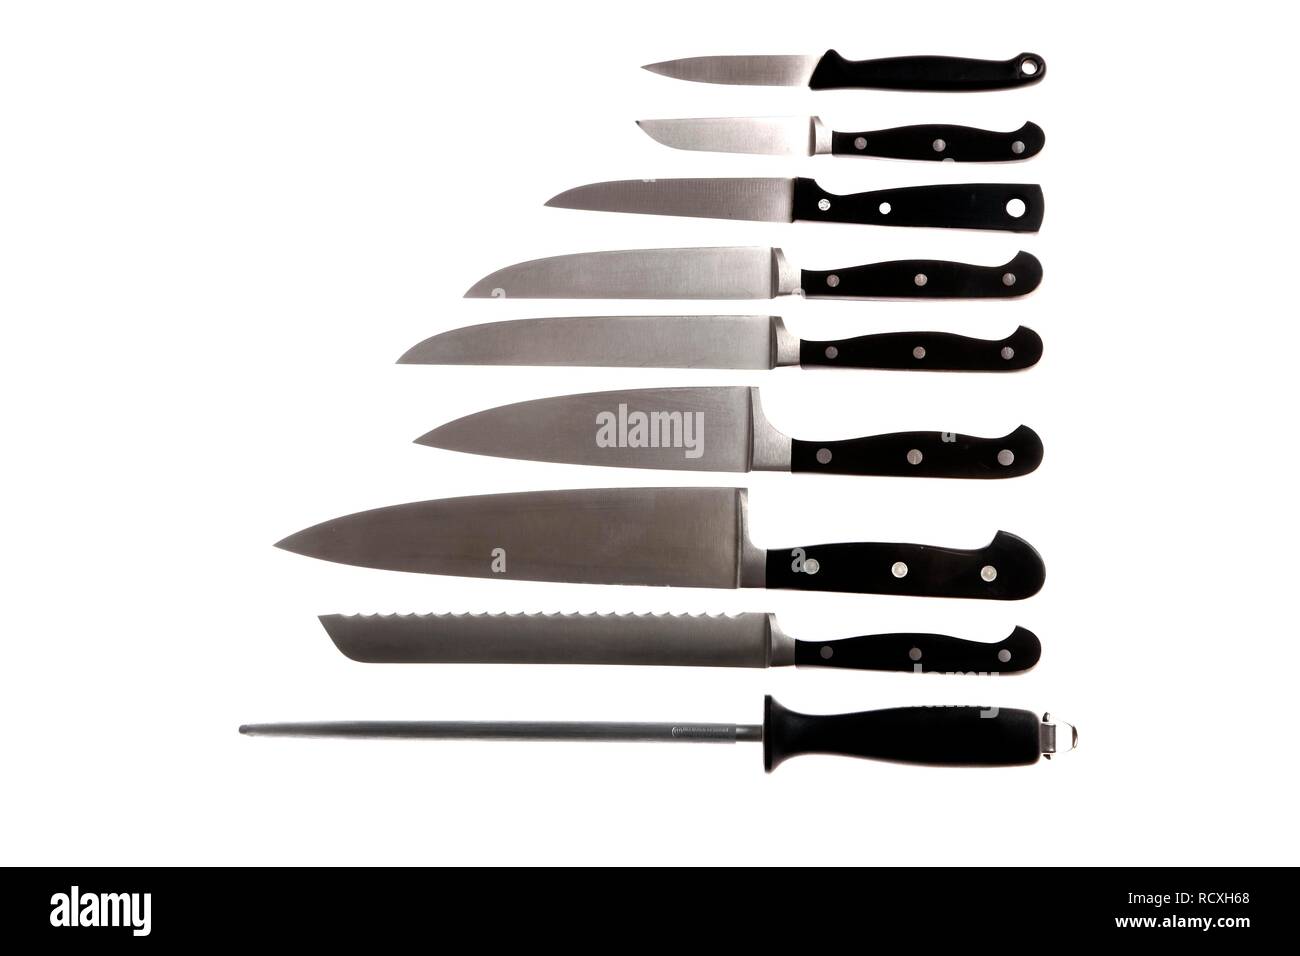 Verschiedene Messer, Wetzstahl, Kochmesser, Brotmesser, filetieren Messer Gemüsemesser Stockfoto